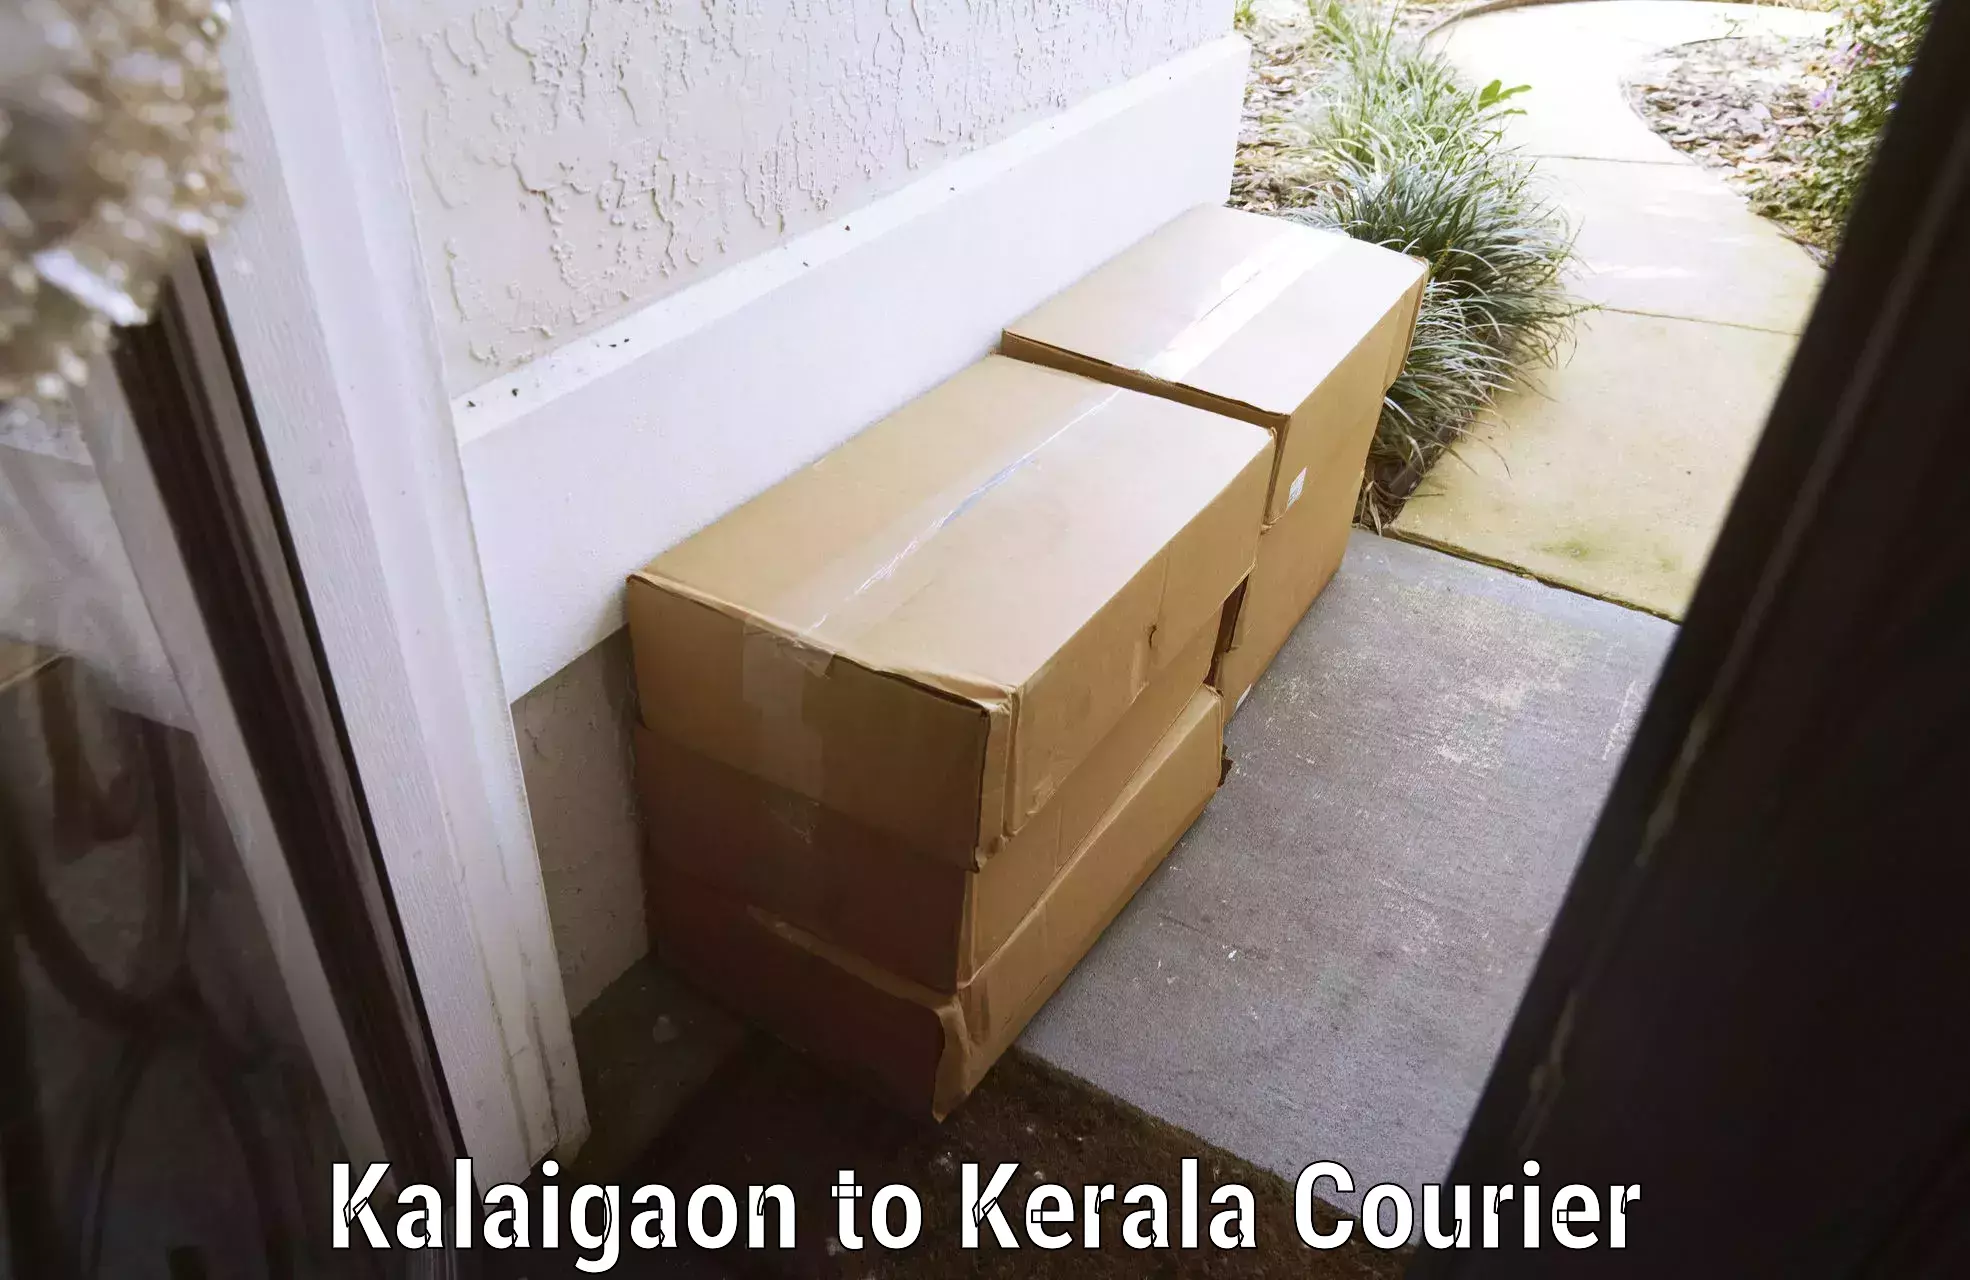 Luggage transit service Kalaigaon to Kerala